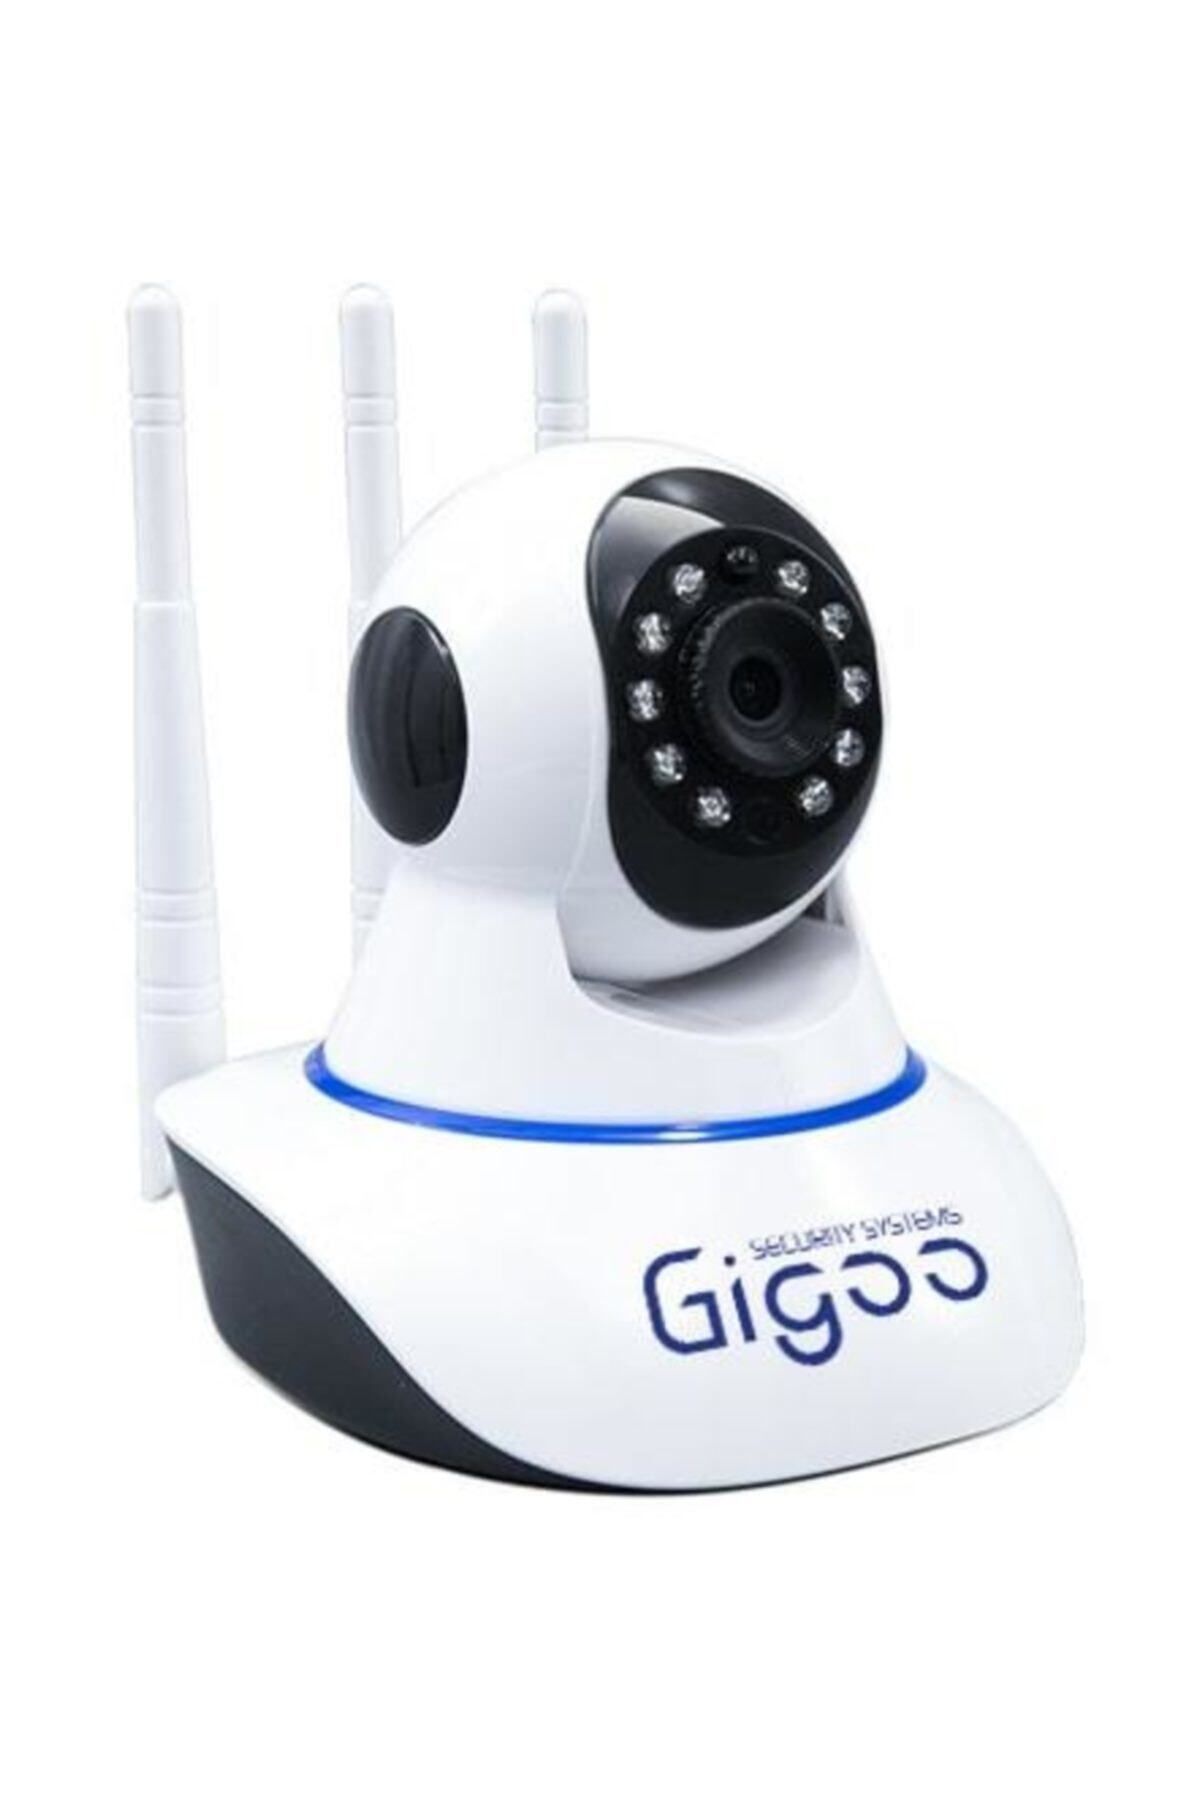 Genel Markalar Gigoo Hd 360° 3 Antenli Hareket Sensörlü Ip Bebek Ve Güvenlik Kamerası